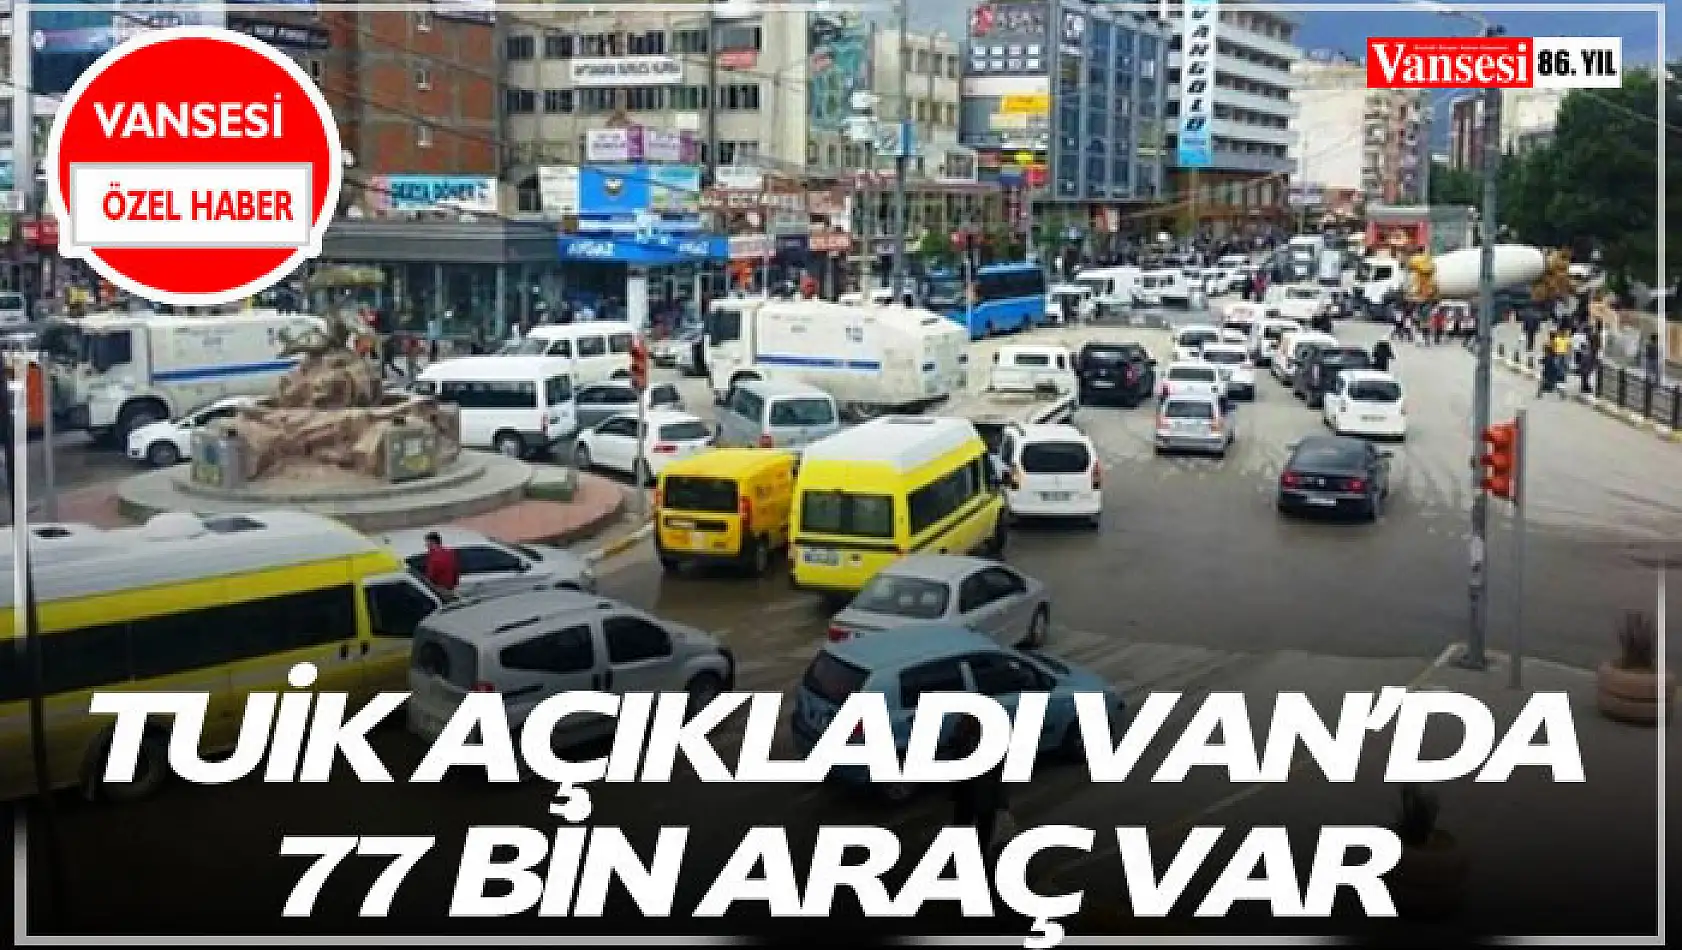 TUİK Açıkladı Van'da 77 Bin araç var